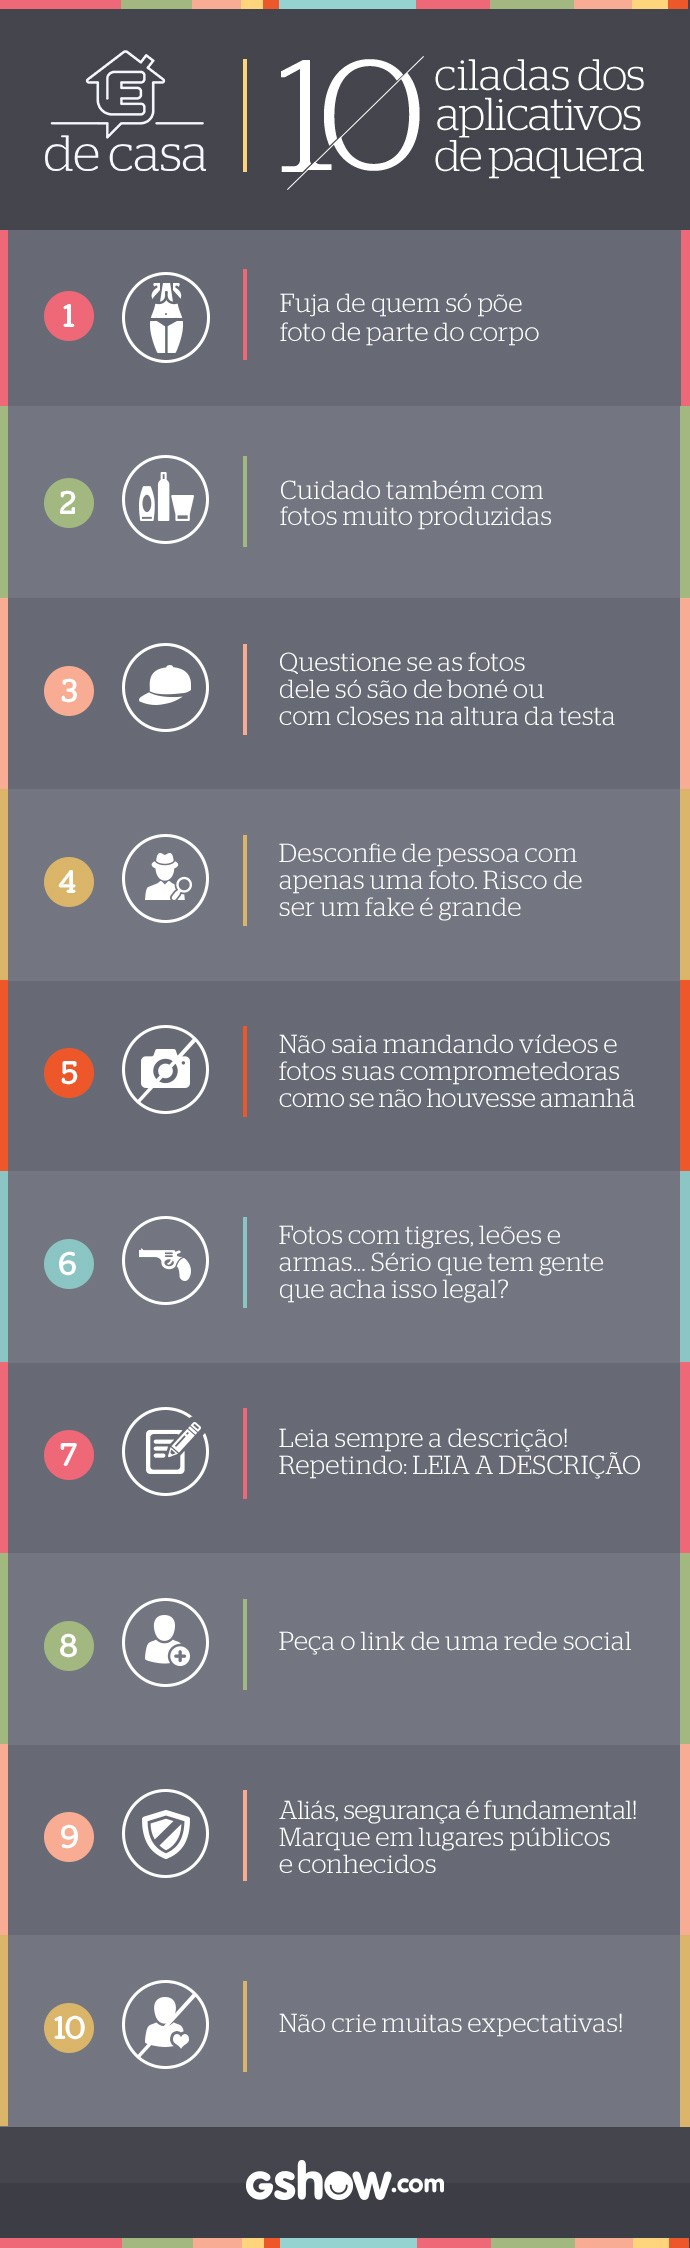 10 dicas para fugir de ciladas  (Foto: Tv Globo/Gshow)